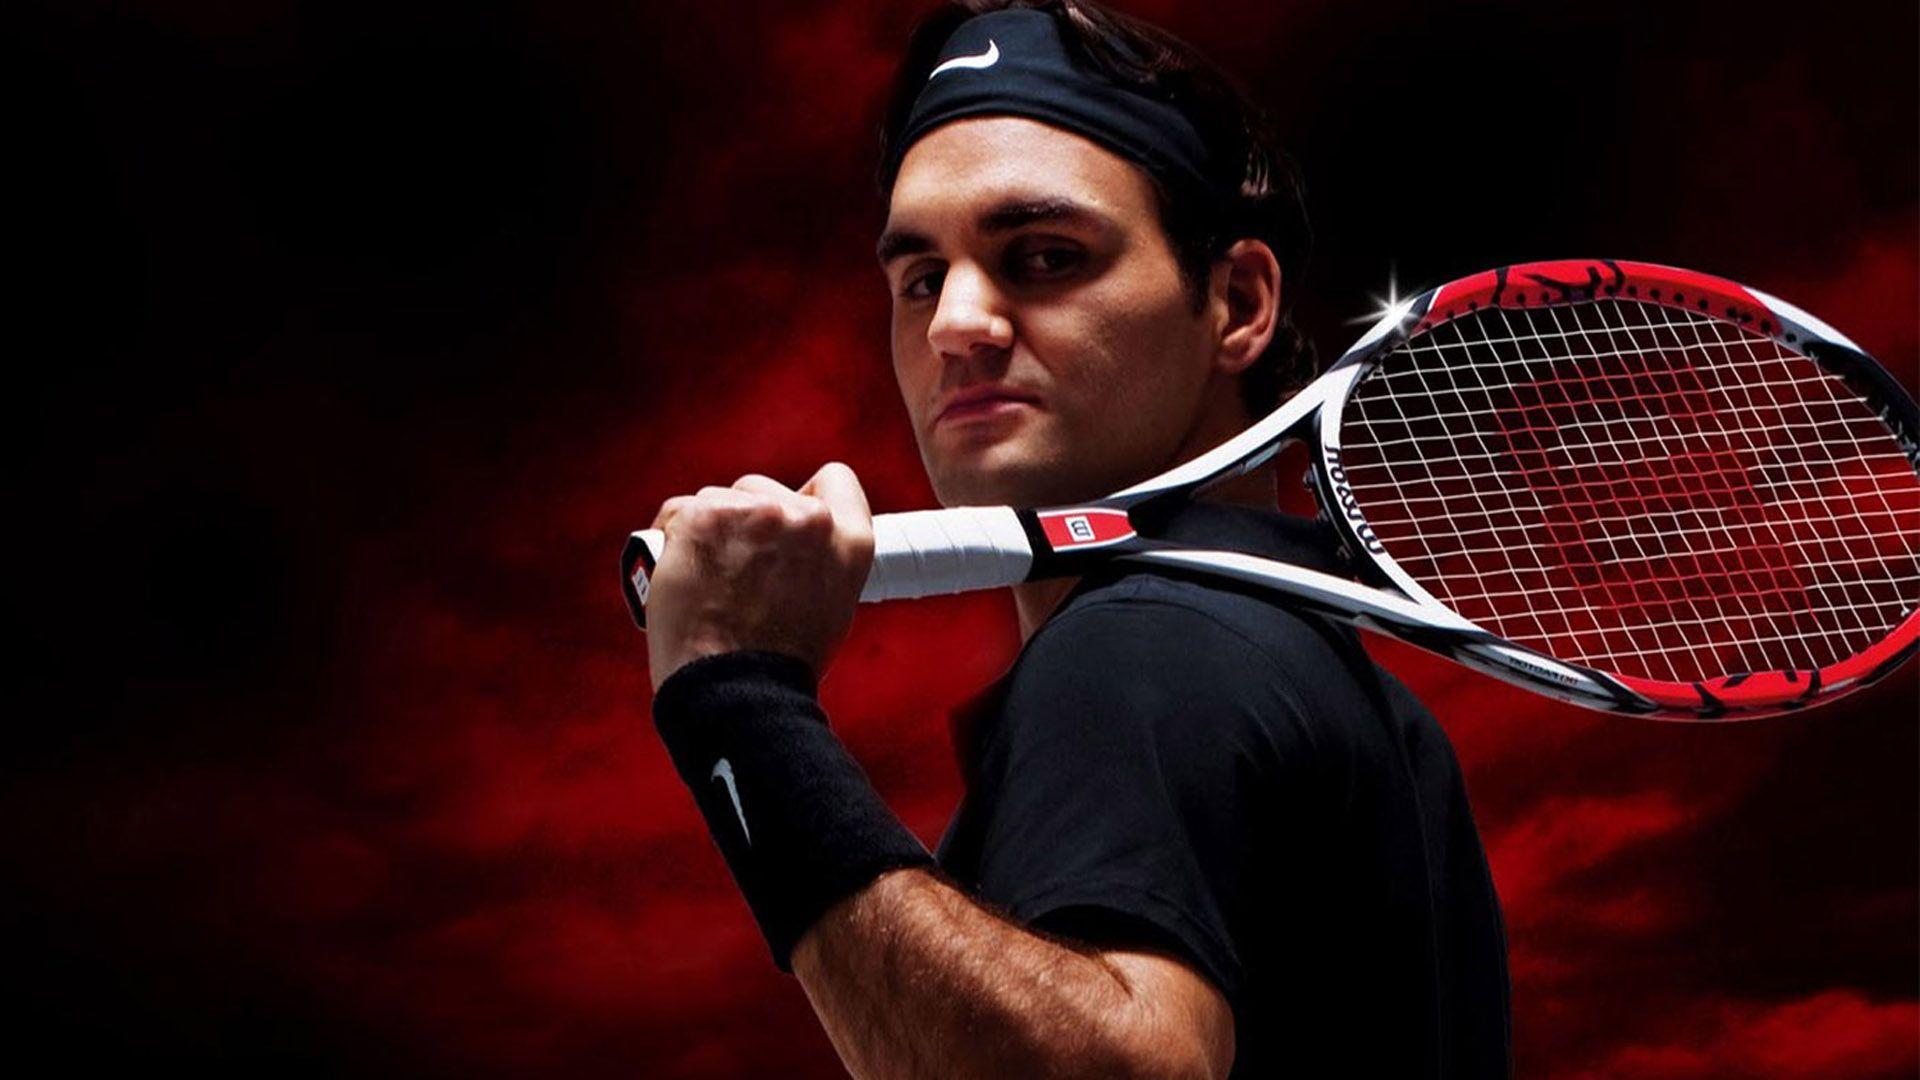 HD Roger Federer Wallpaper